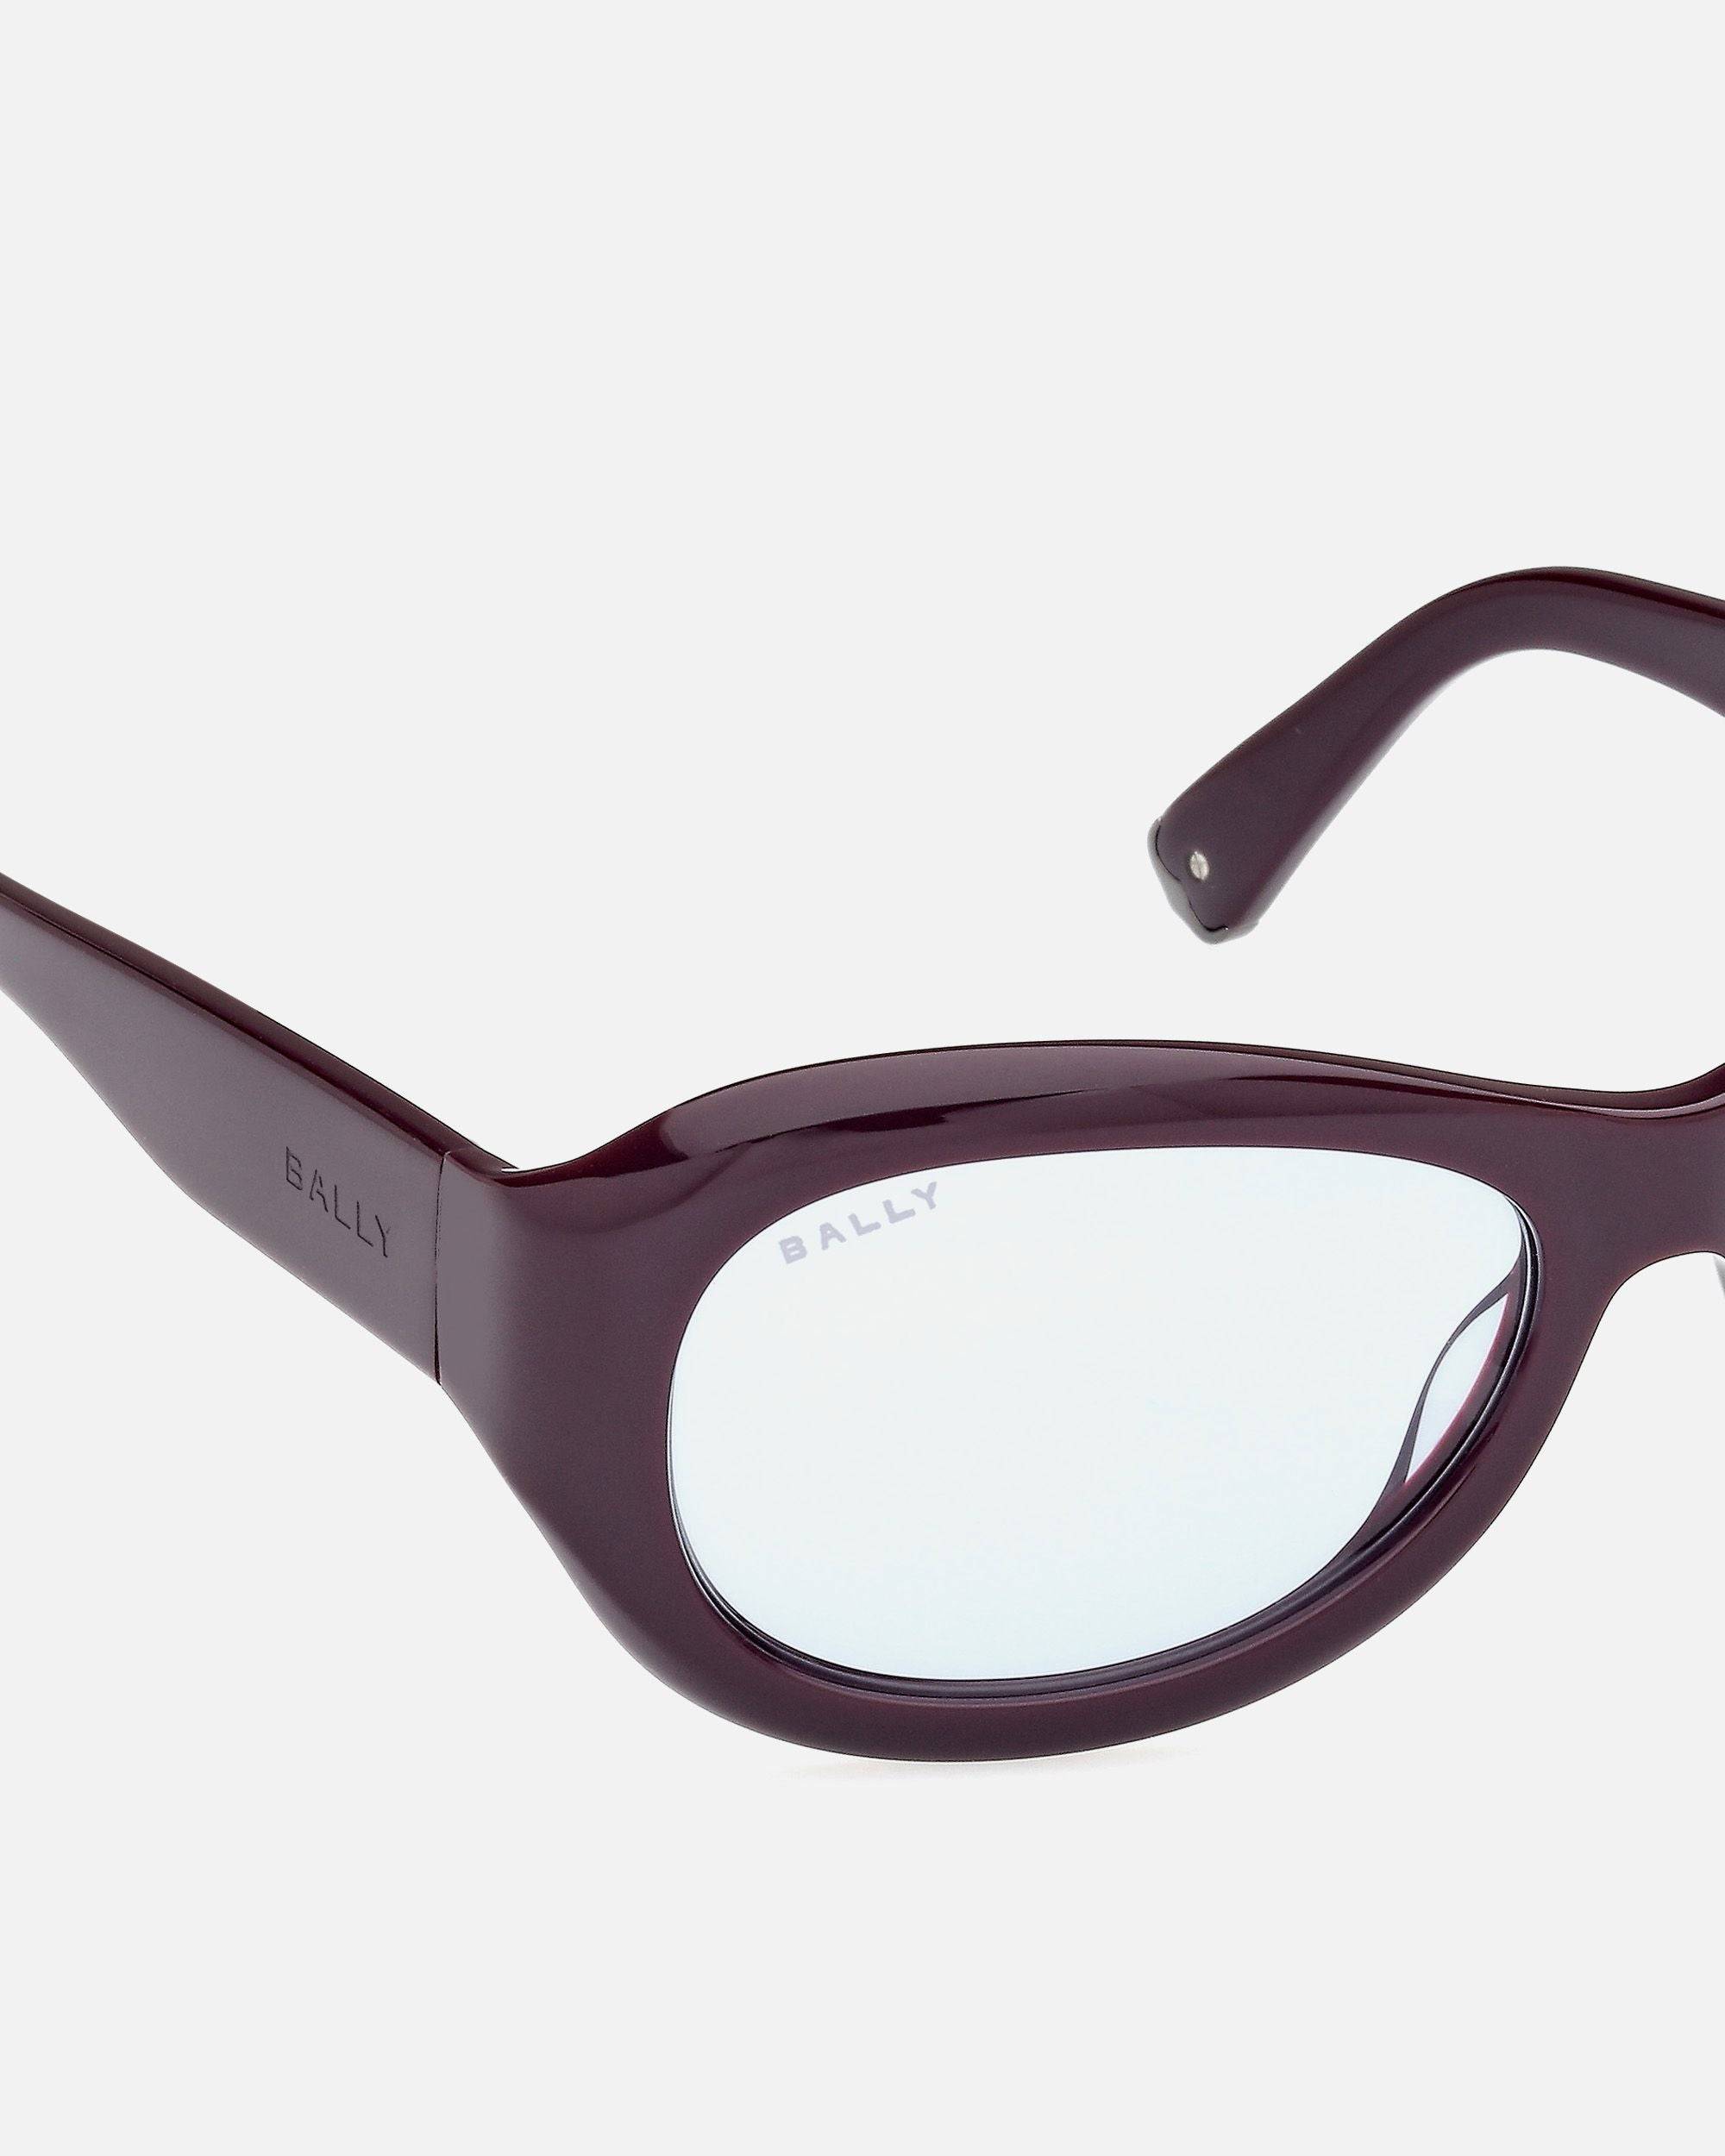 Maurice Sonnenbrille | Unisex-Accessoires | Lila Acetat mit blauen Gläsern | Bally | Still Life Detail